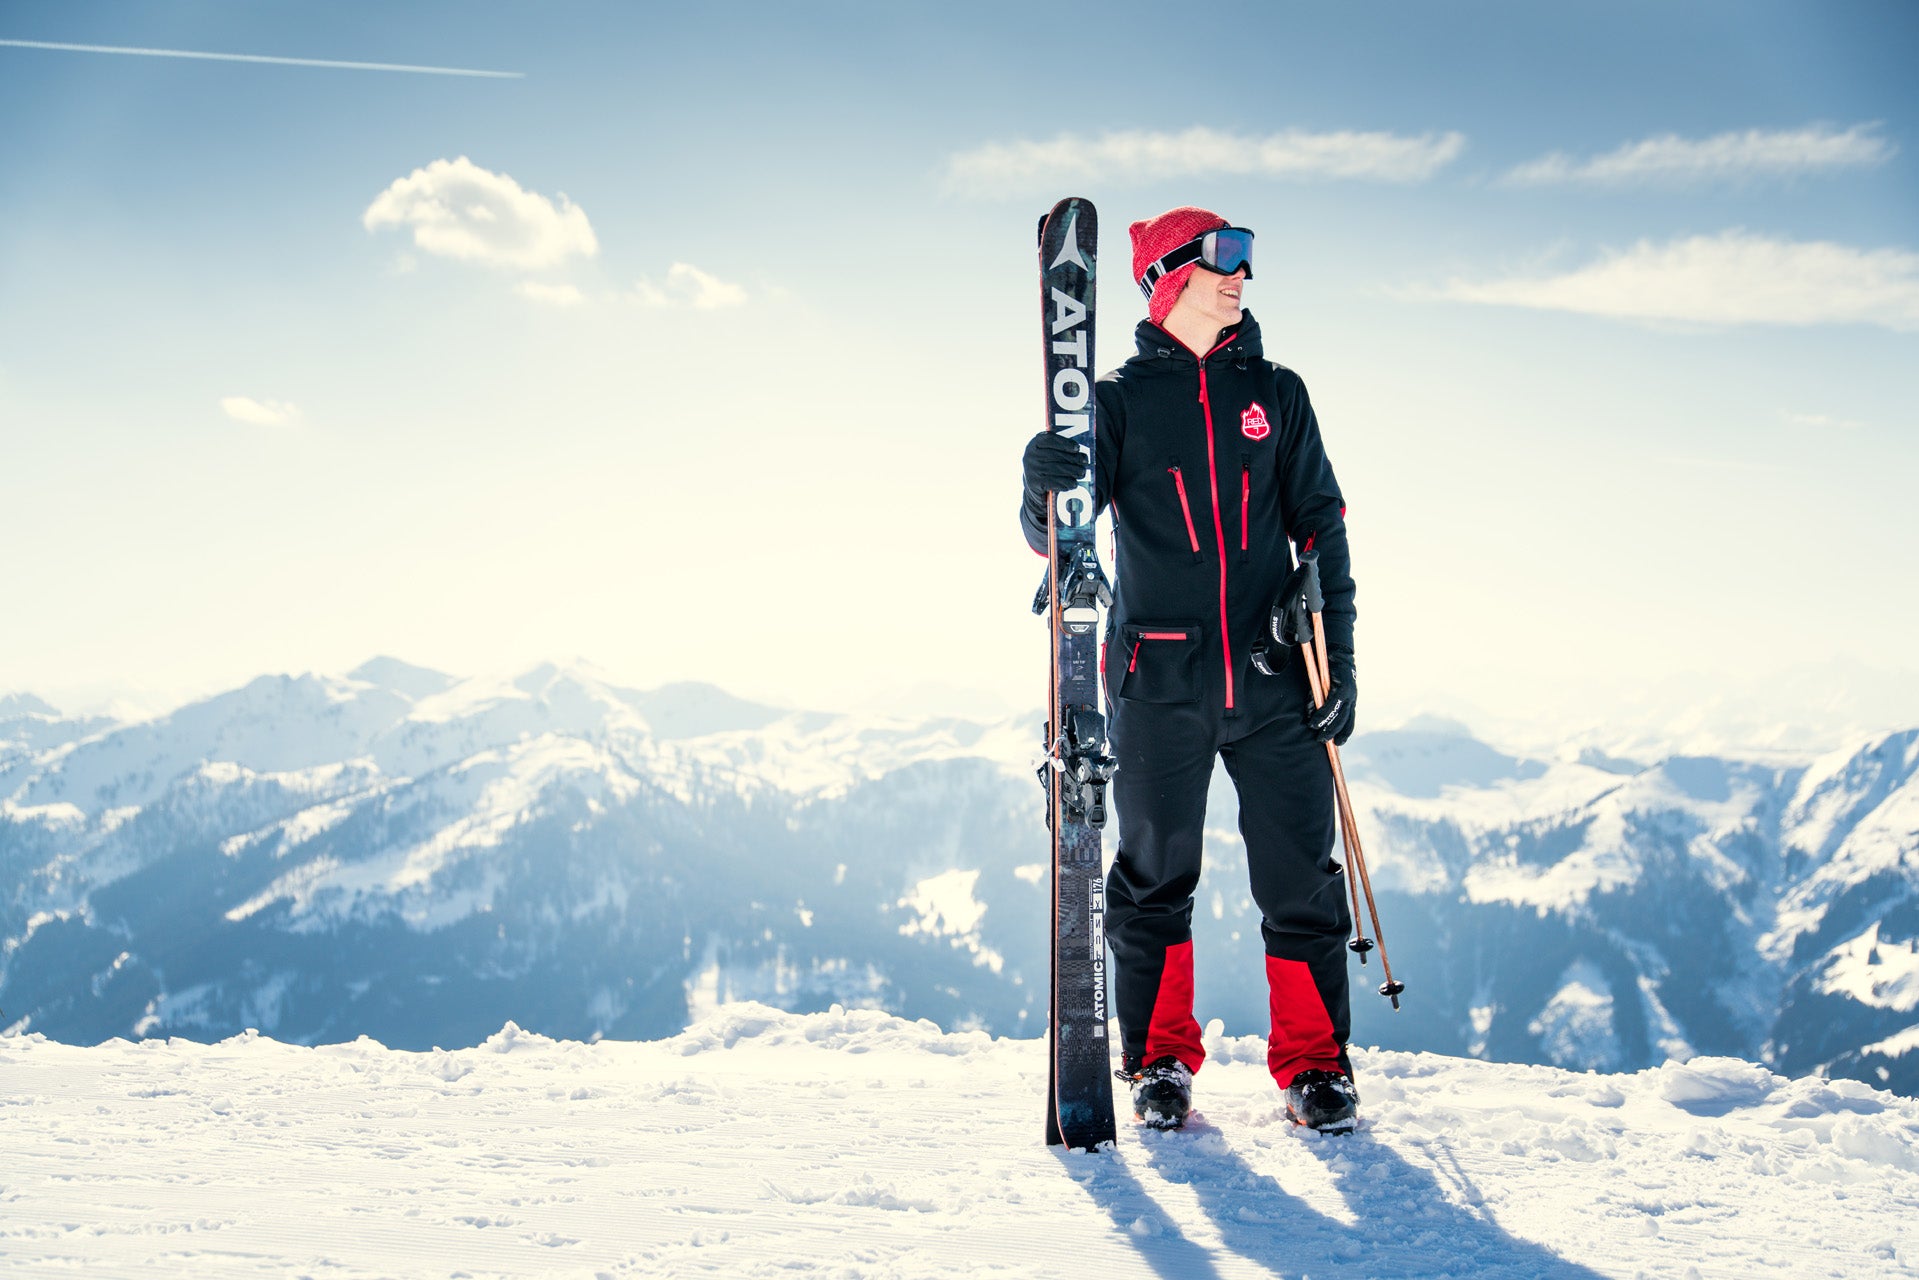 Ski suit slim fit REMBRA - Black with red stripes skinny ski